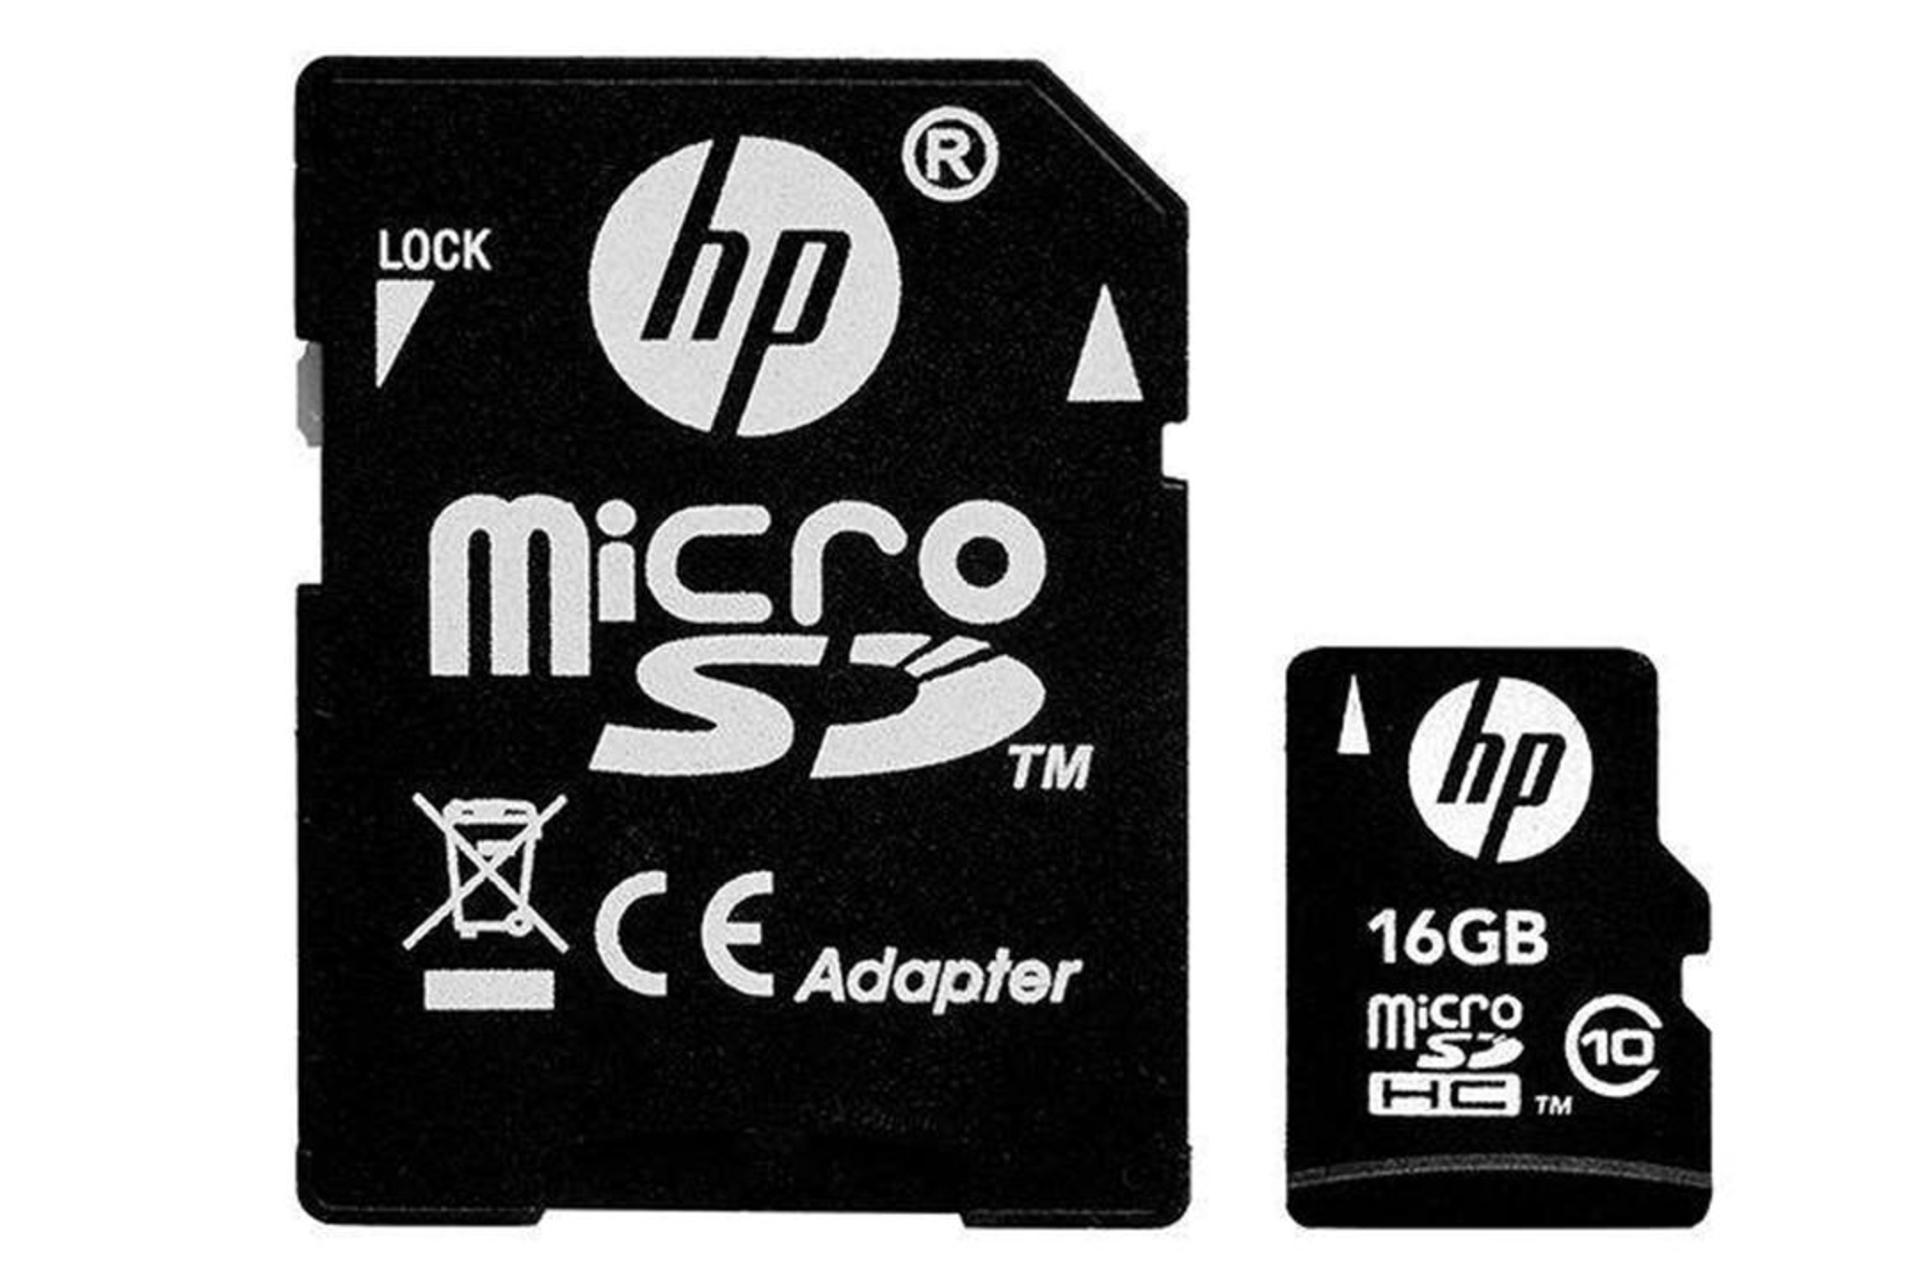 HP mi210 microSDHC Class 10 UHS-I U1 16GB